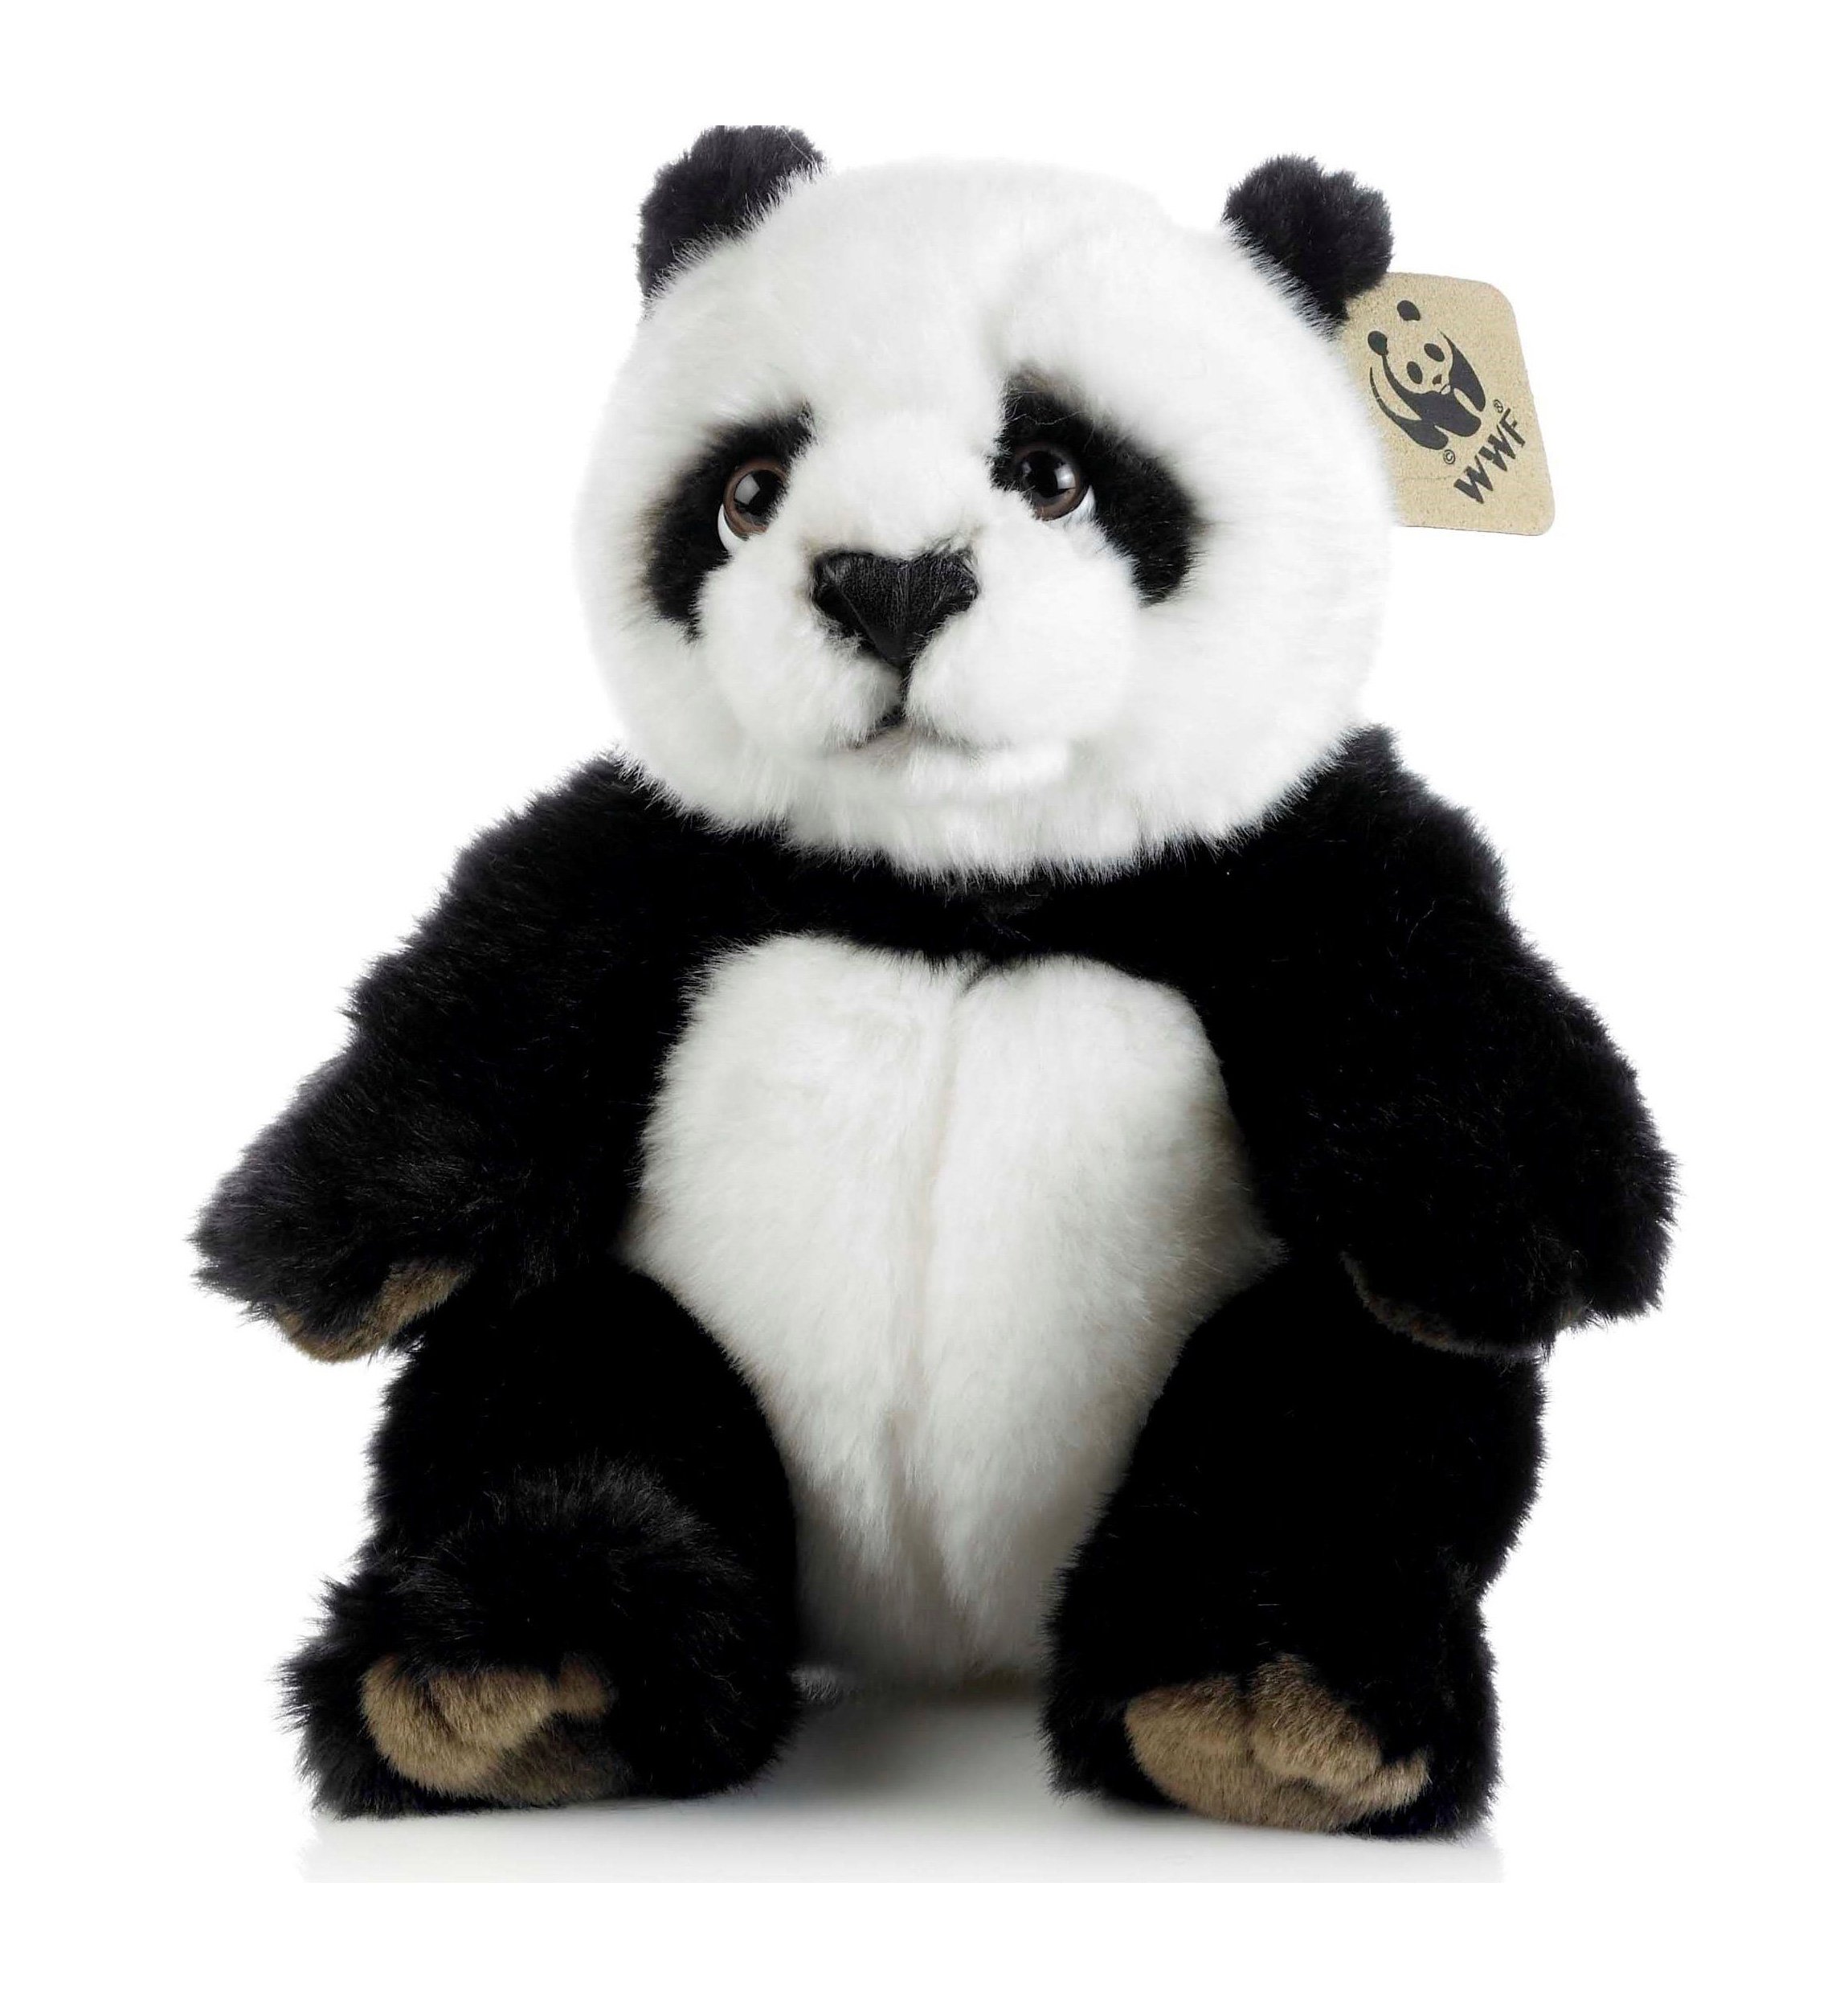 cuddly panda toy